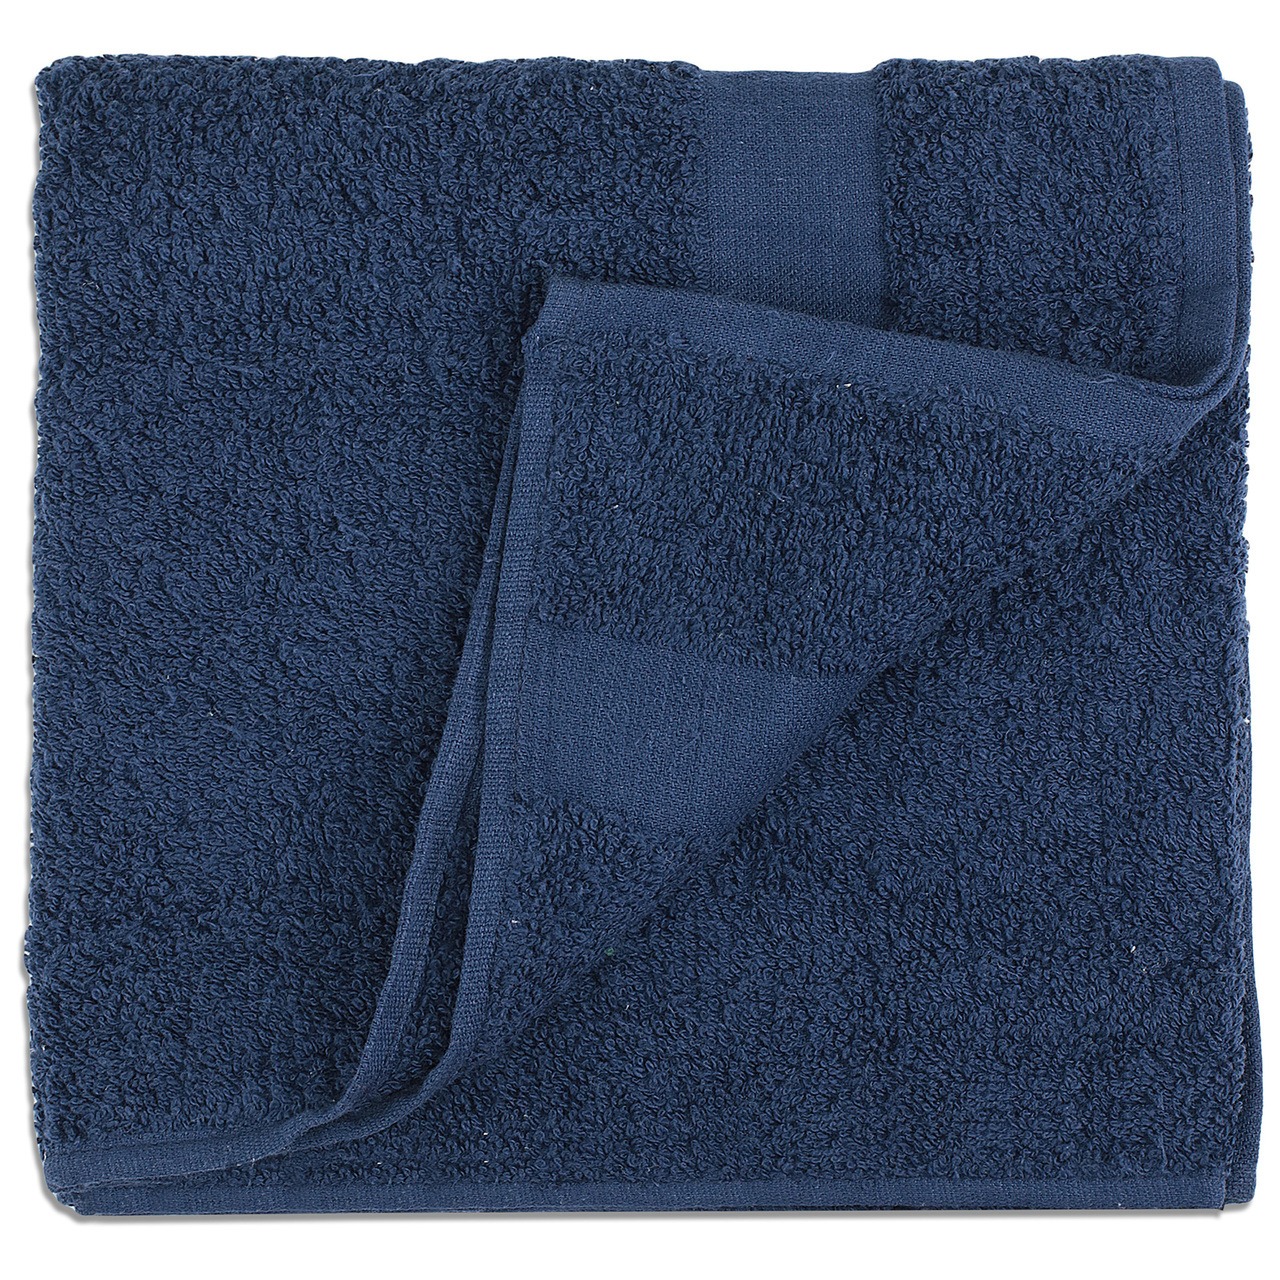 Blue Towels Top Sellers, 50% OFF | www.visitmontanejos.com